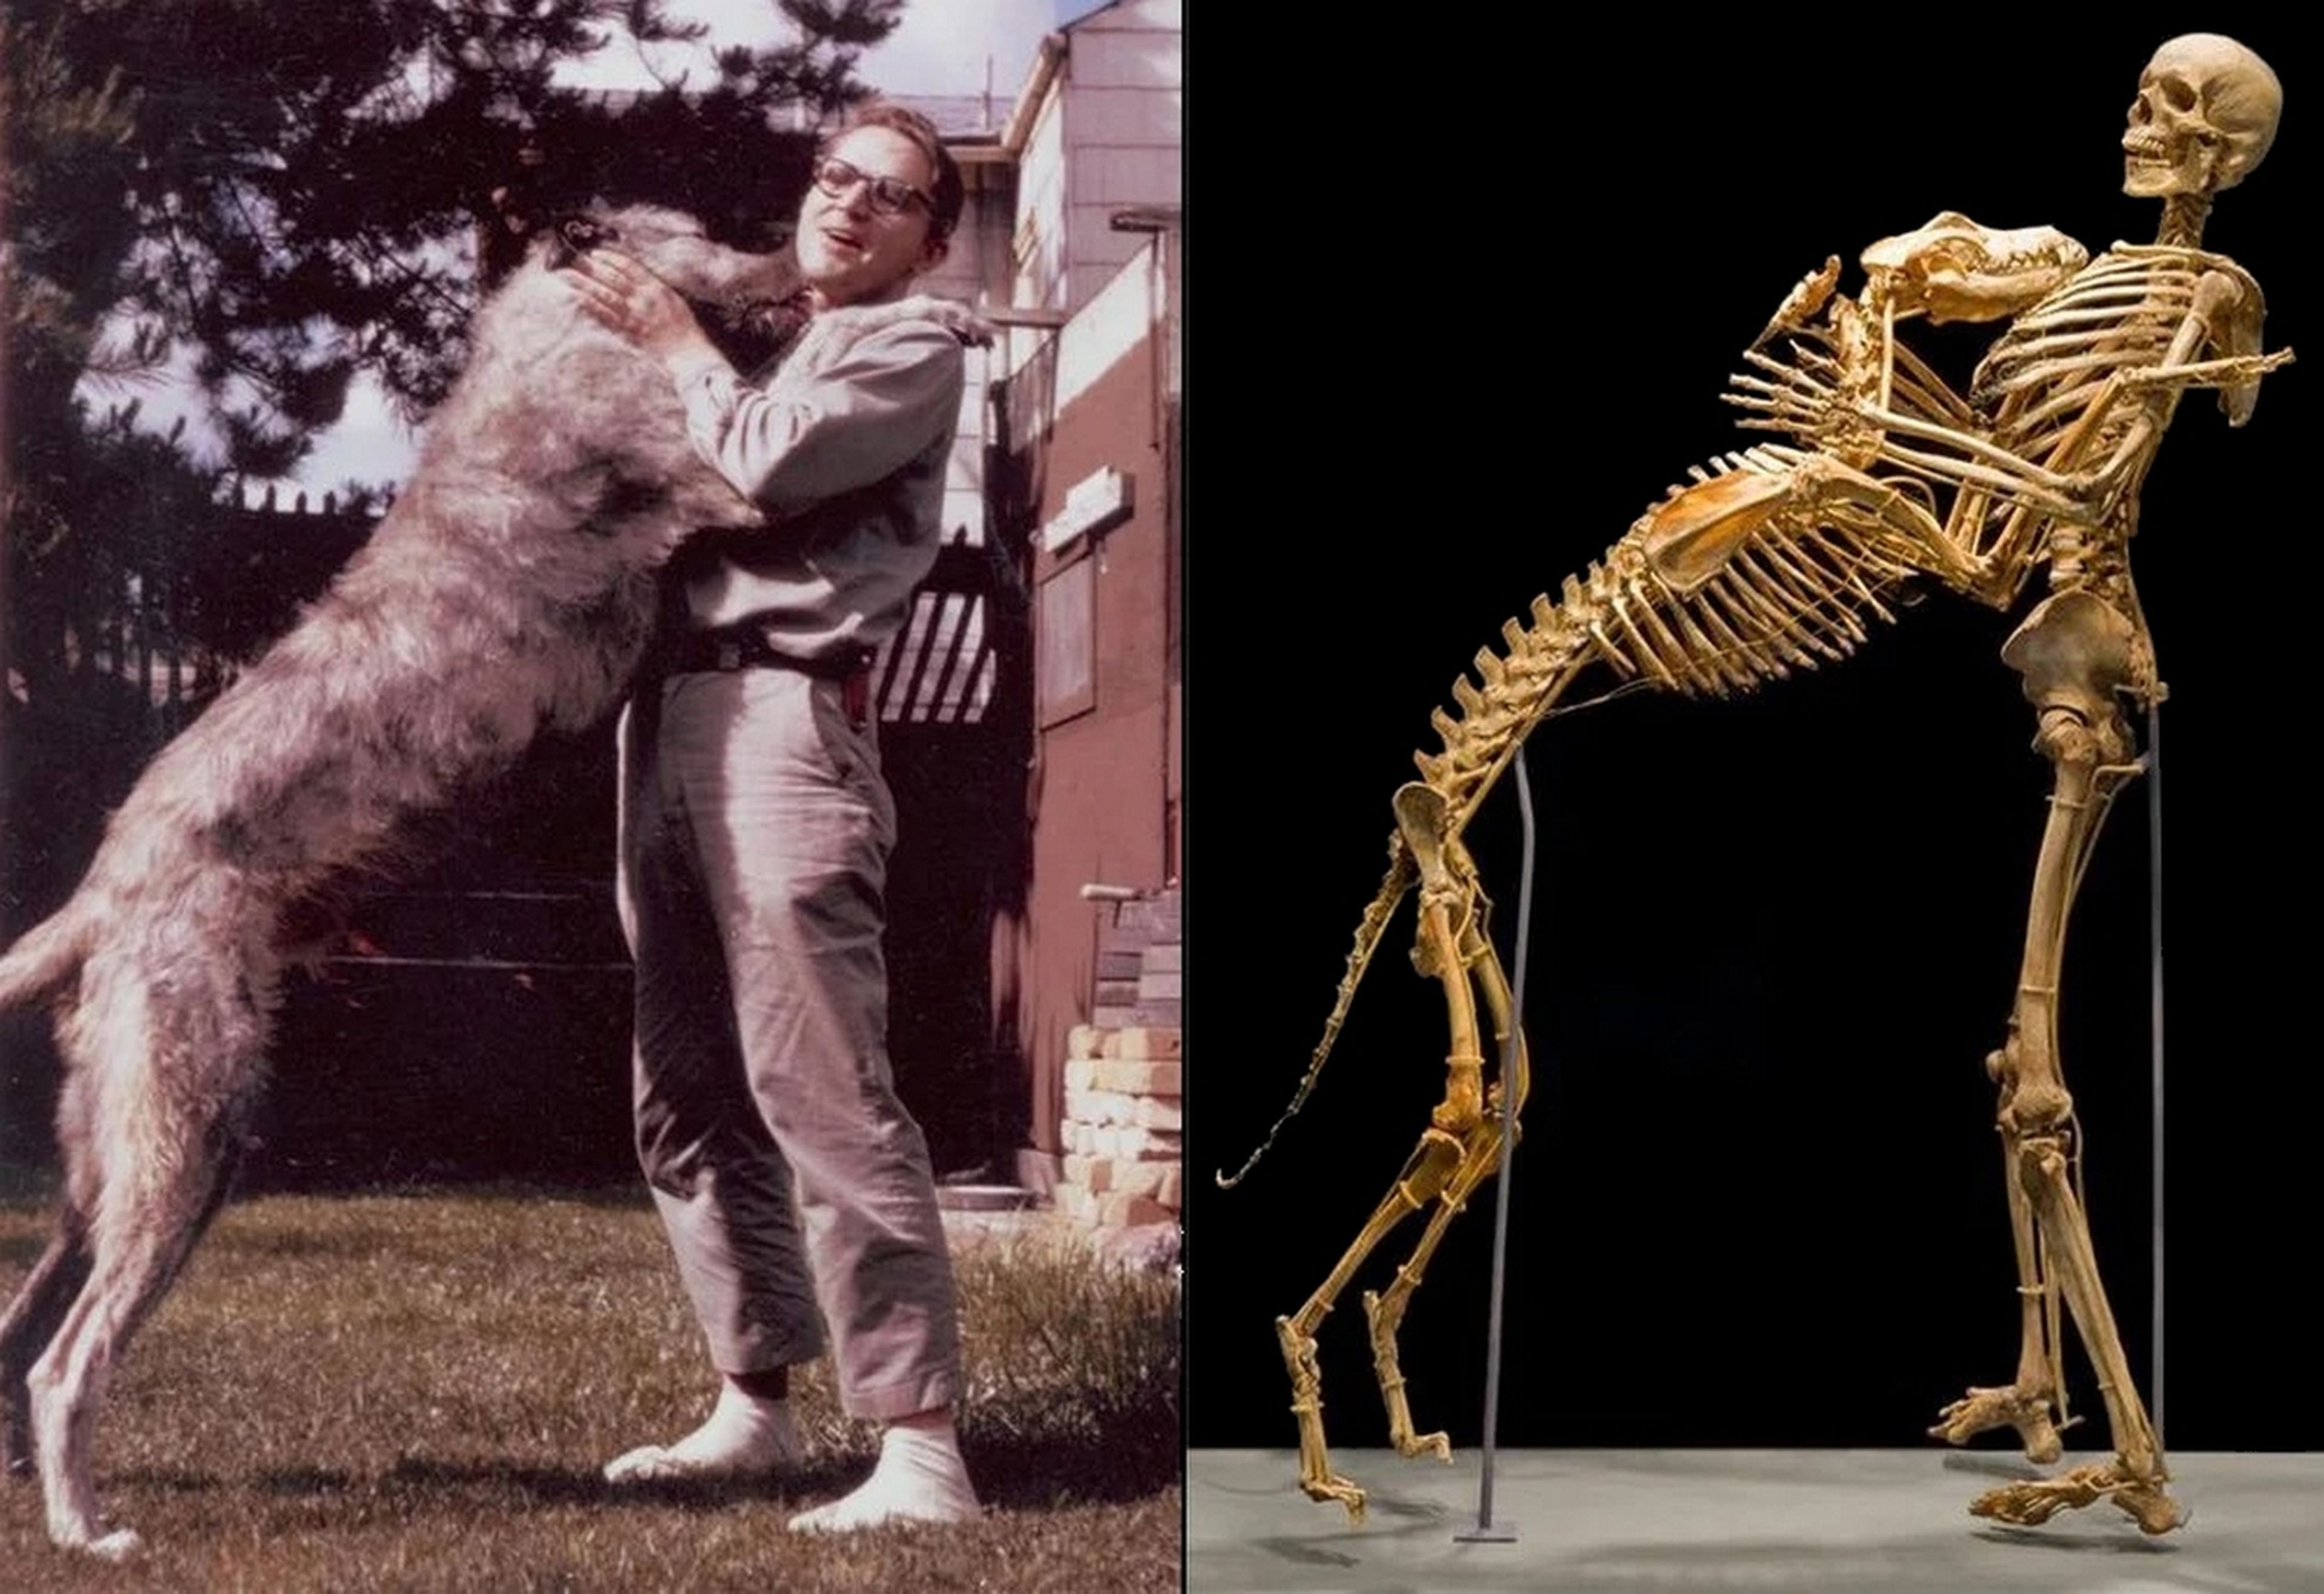 La curiosa historia del antropólogo y su perro que donaron el cuerpo a la ciencia... y pasaron años buscando el Bigfoot